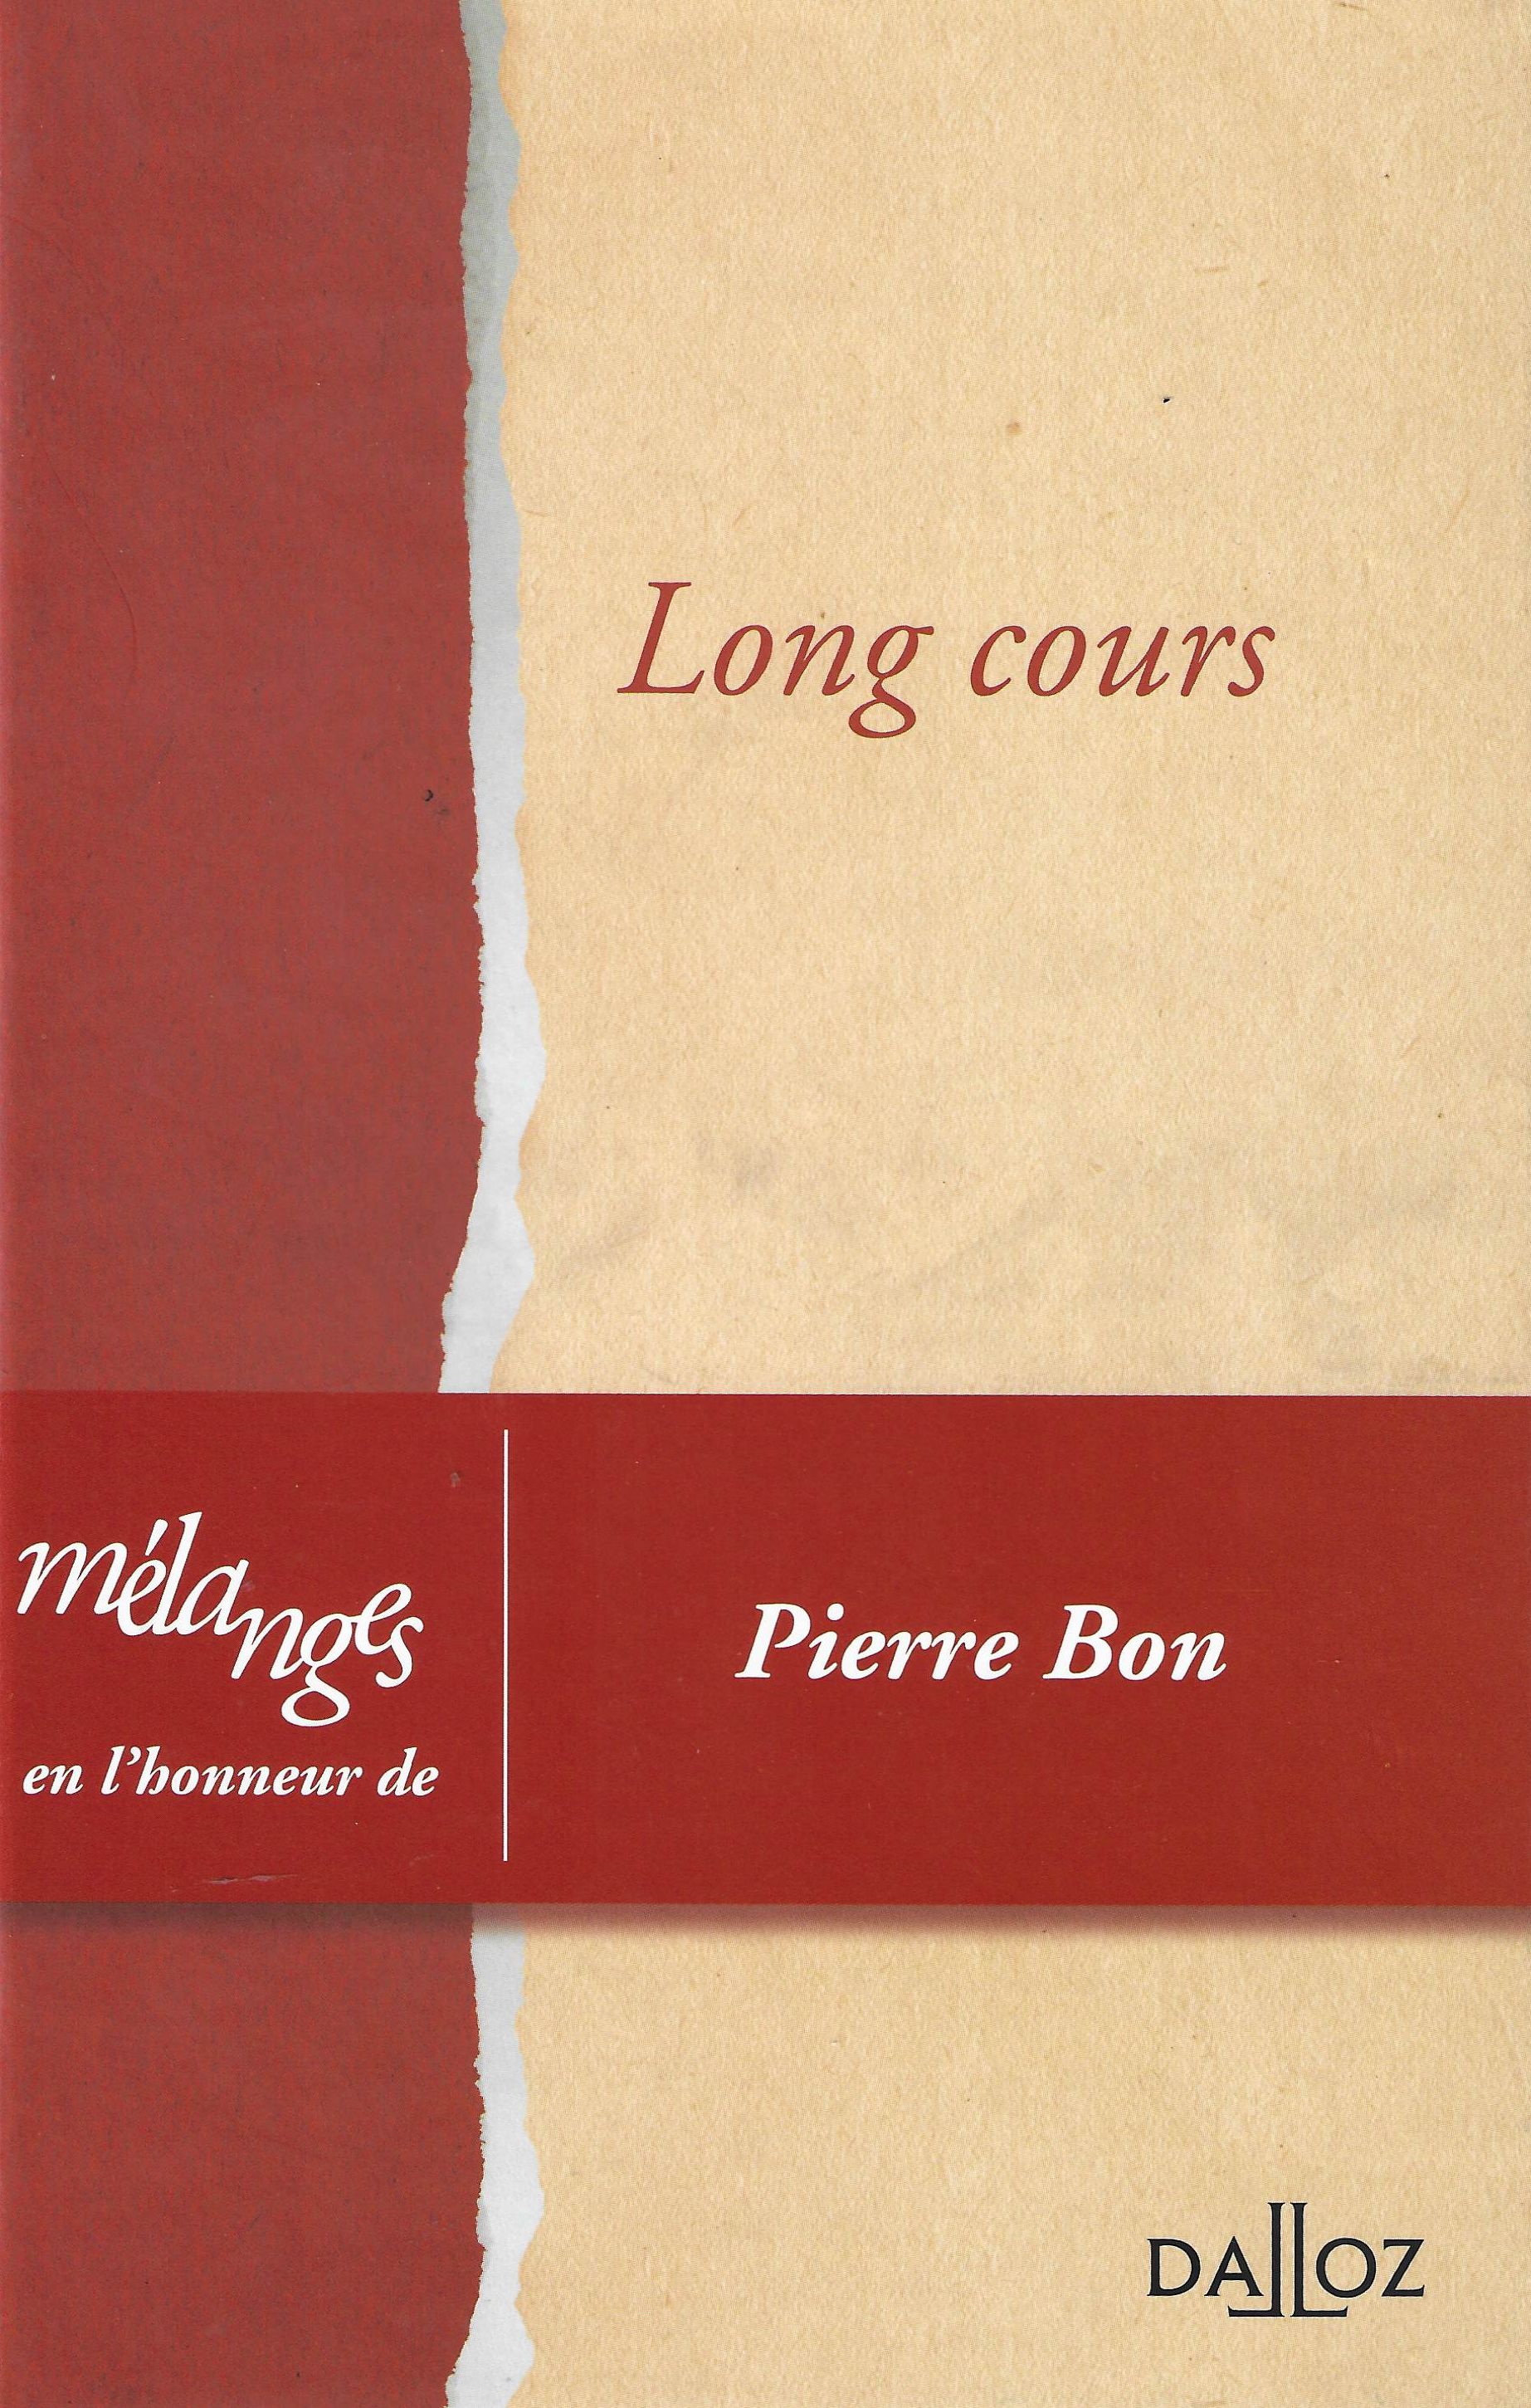 Imagen de portada del libro Long cours